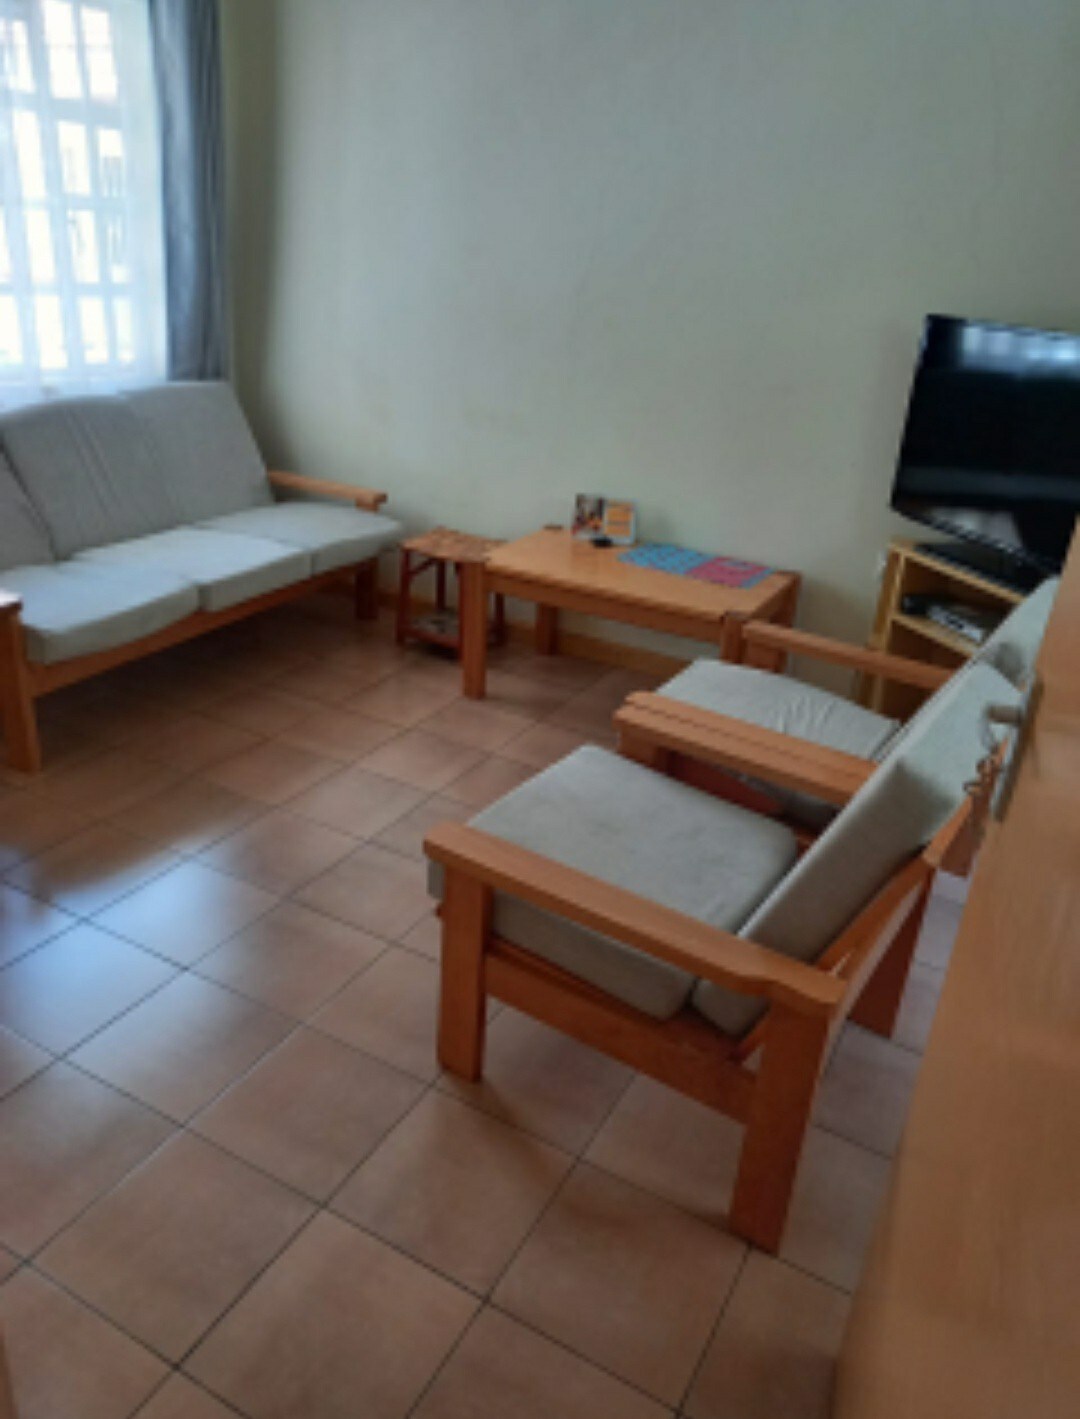 One Bedroom Eldoret: peaceful and quiet home.